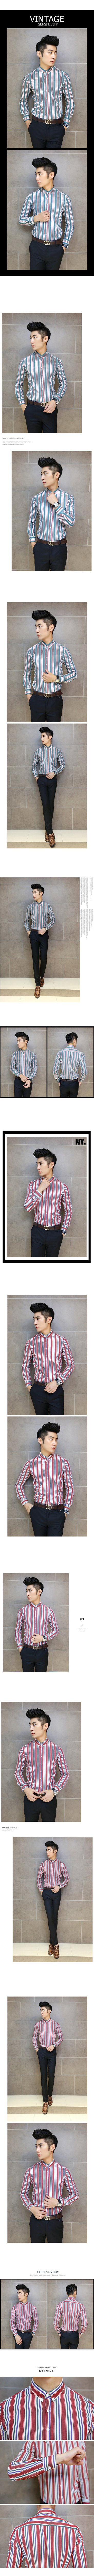 Mssefn 2014秋冬新款 韩版英伦时尚 精选色织条纹 纯棉修身男士两色长袖衬衫T16